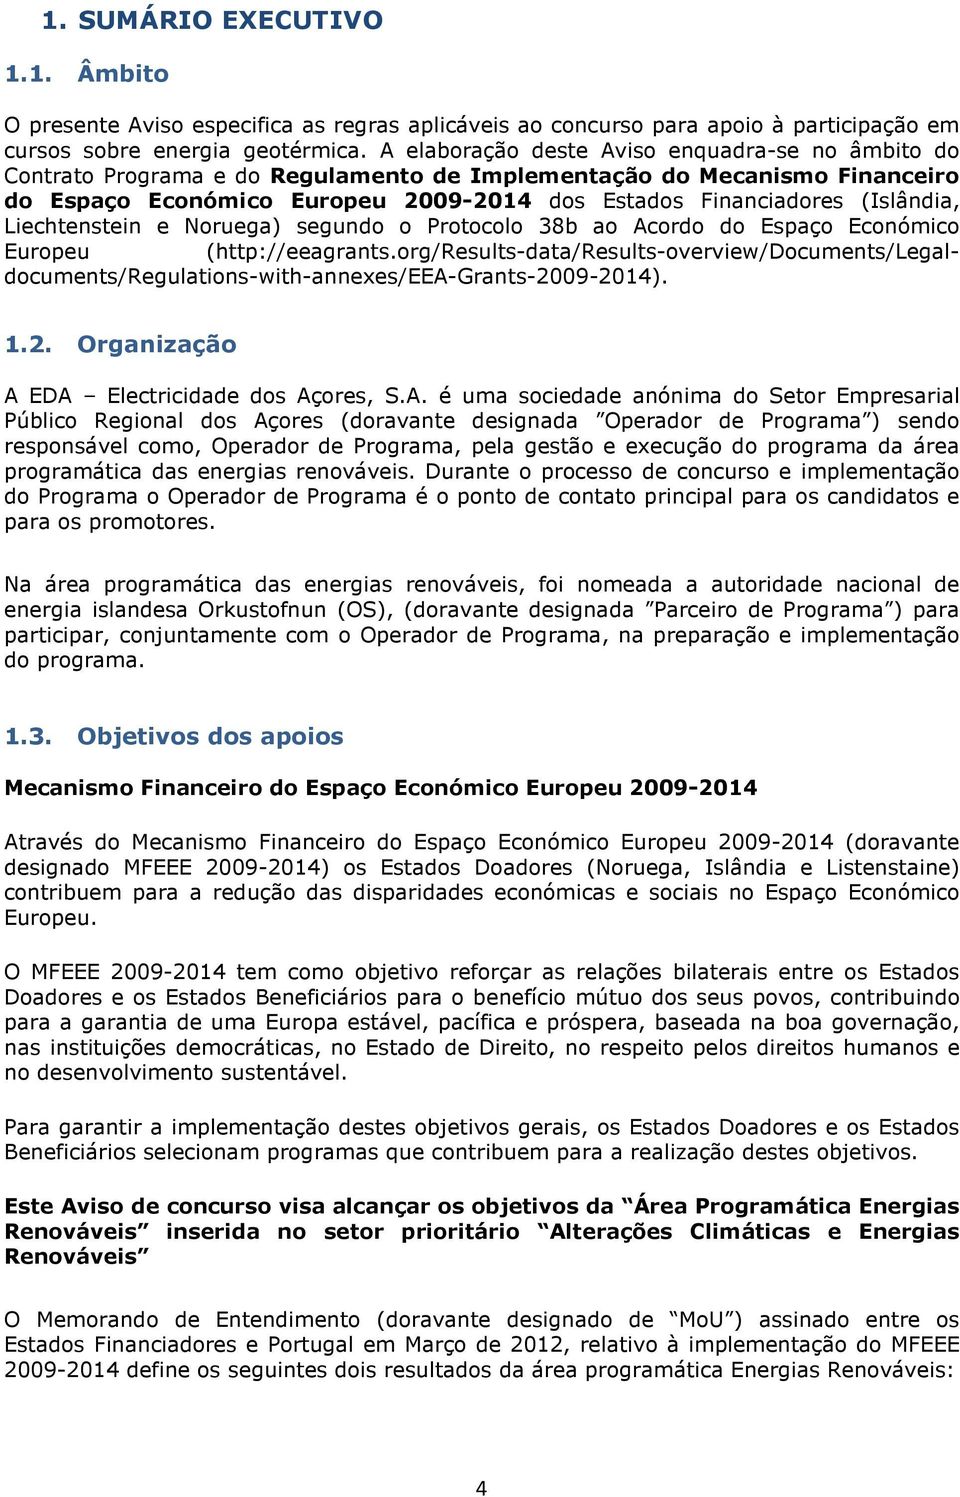 Nruega) segund Prtcl 38b a Acrd d Espaç Ecnómic Eurpeu (http://eeagrants.rg/results-data/results-verview/dcuments/legaldcuments/regulatins-with-annexes/eea-grants-20